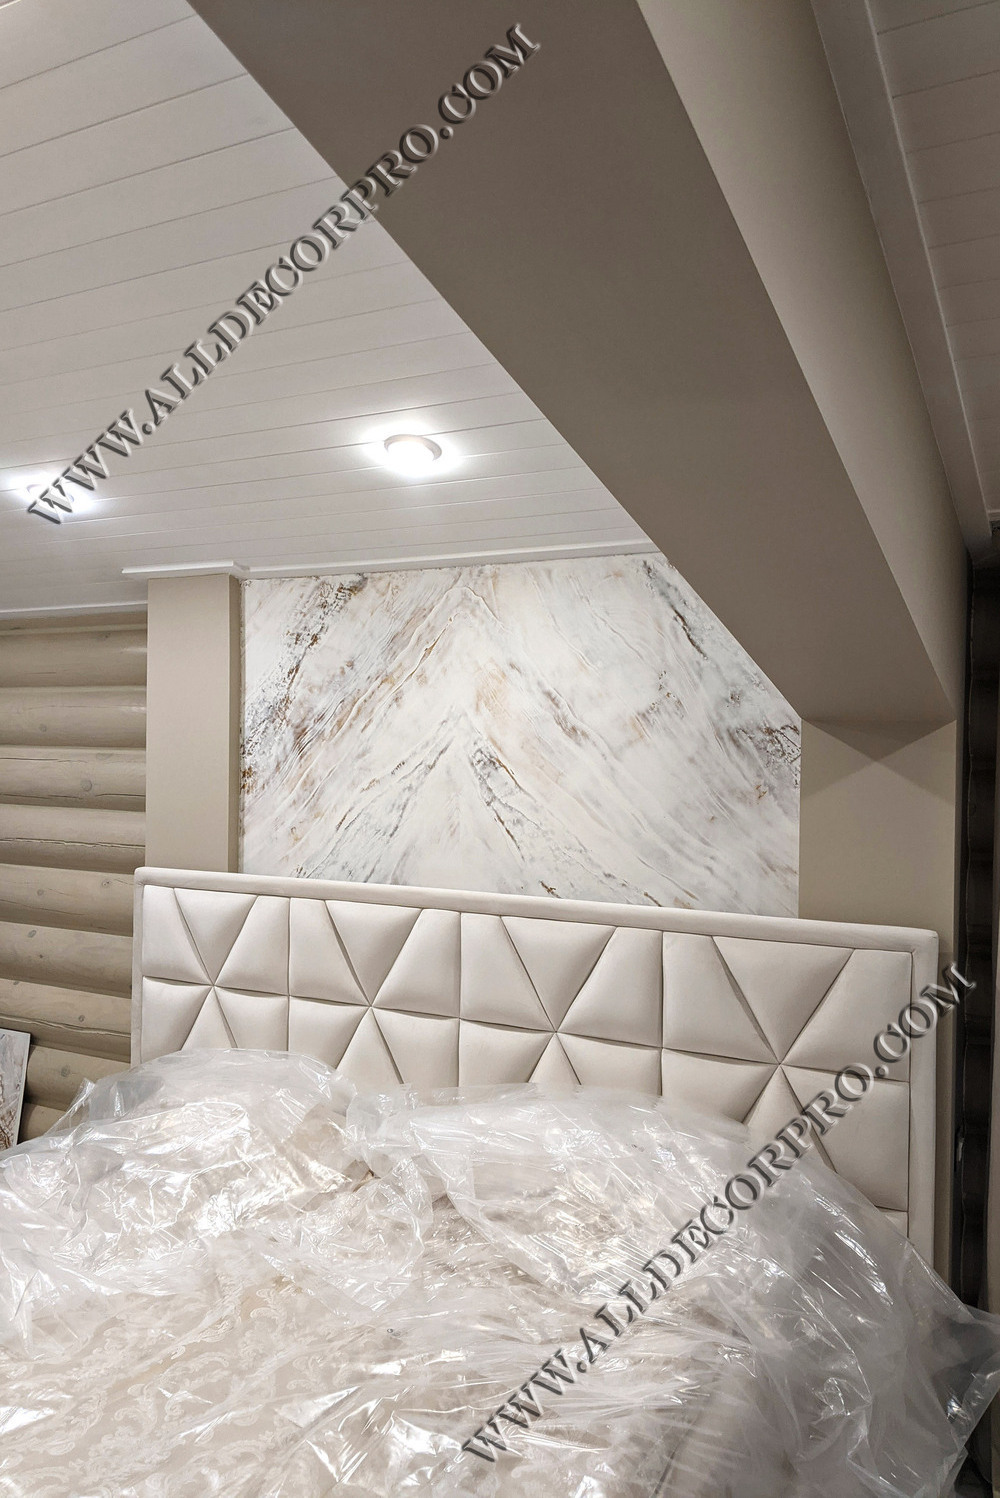 Простенки спальни коттеджа декорированные венецианской штукатуркой имитирующей мрамор